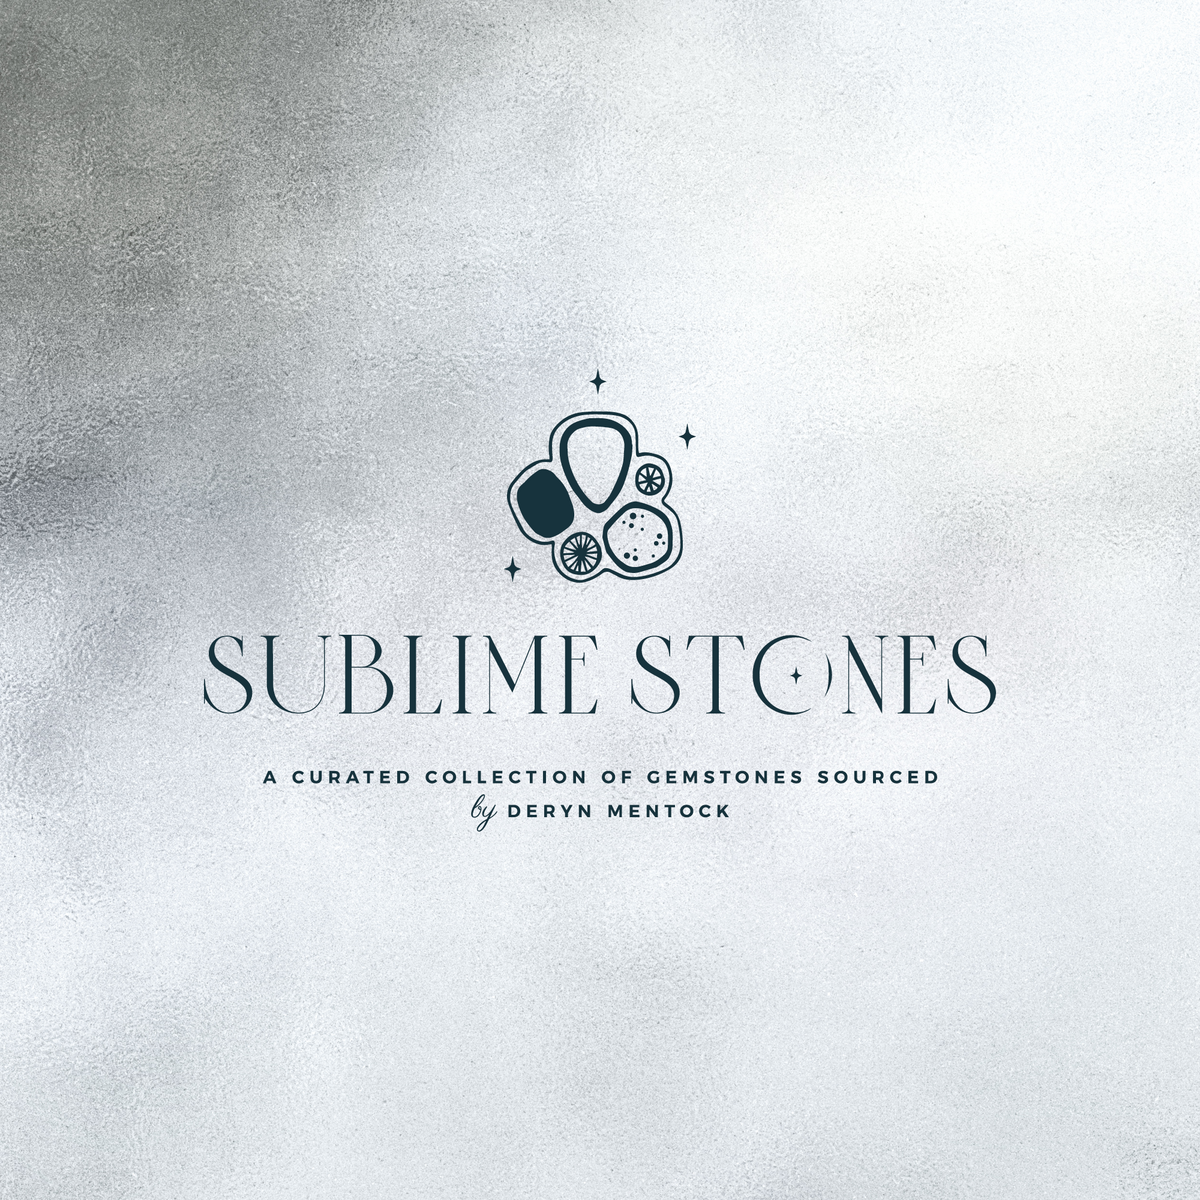 SublimeStones_SocialMedia1